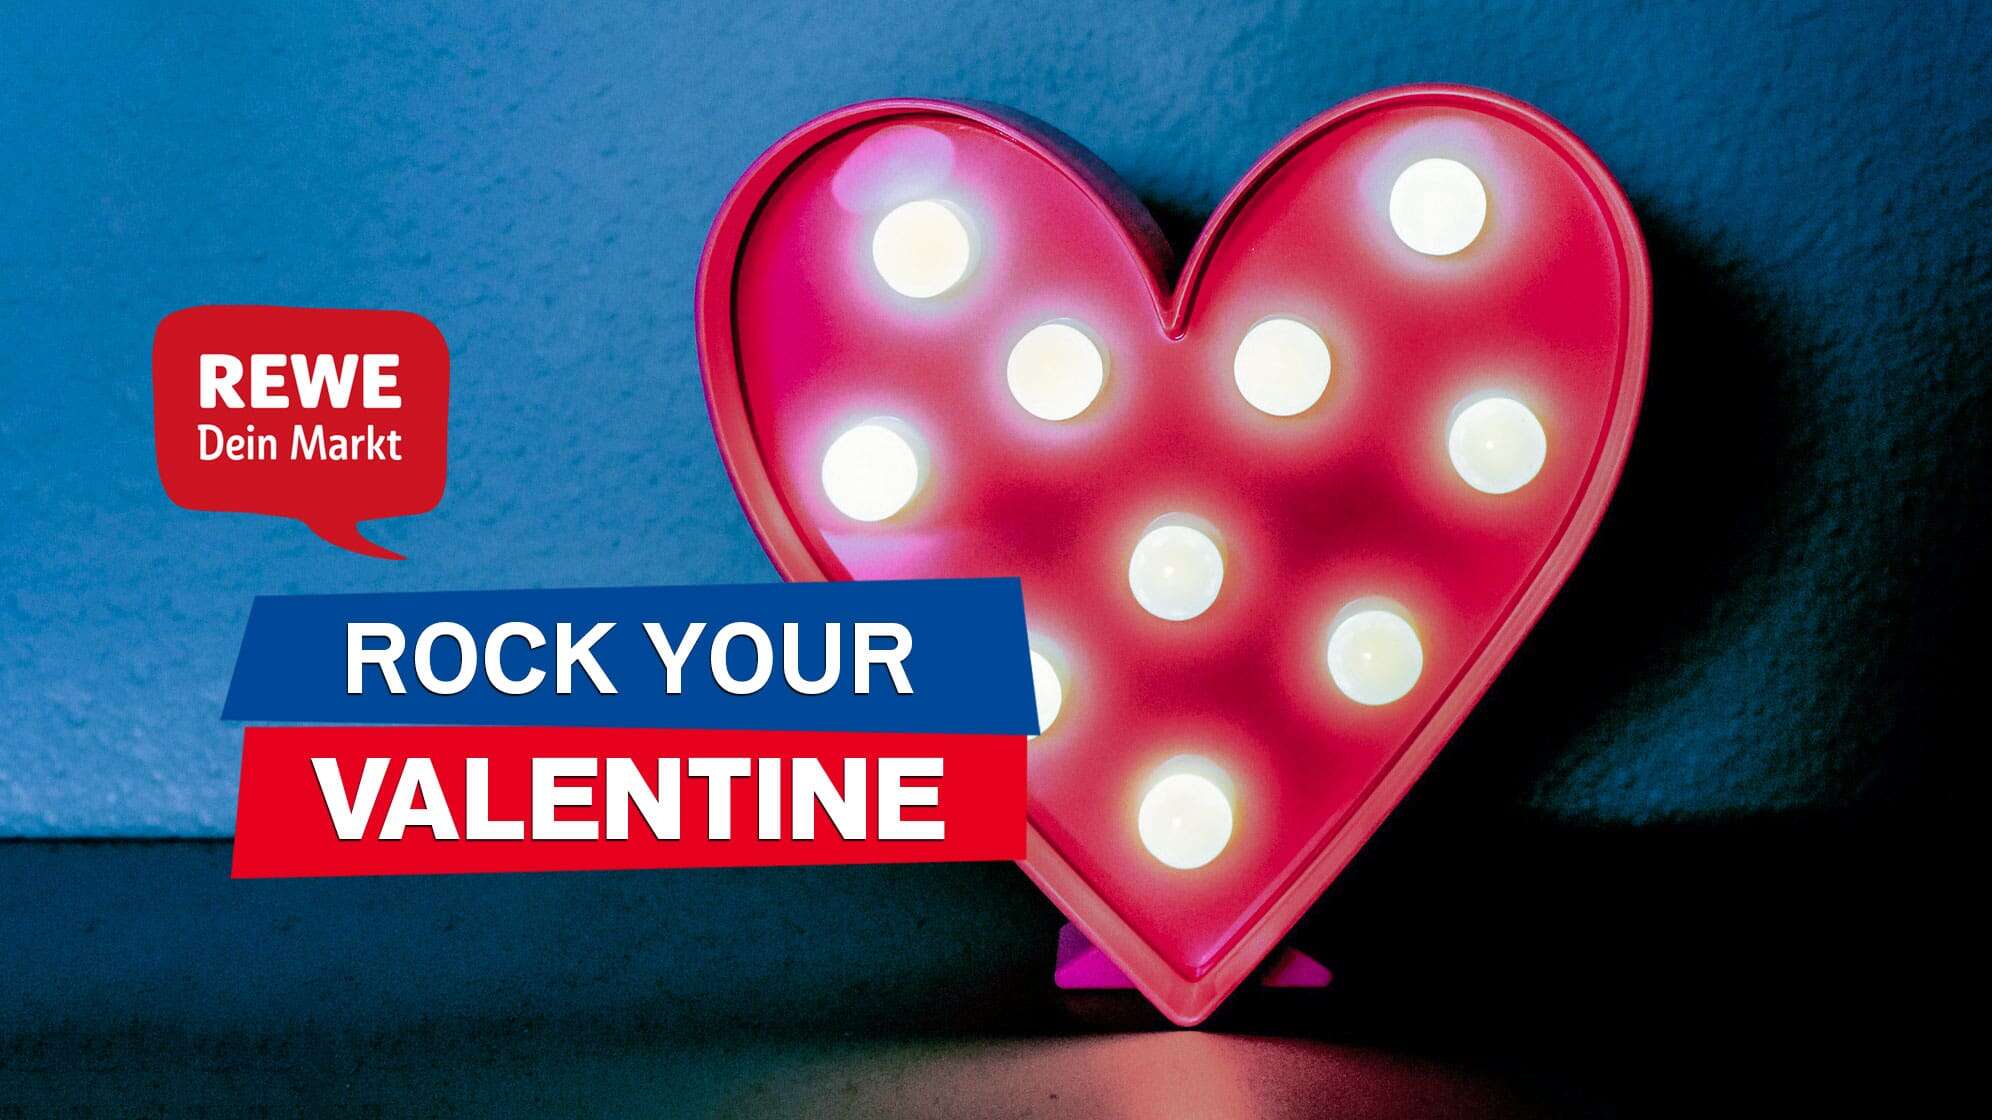 Bild eines roten Herzaufstellers mit runden Glühbirnen, dazu Text - ROCK YOUR VALENTINE - und das REWE Logo